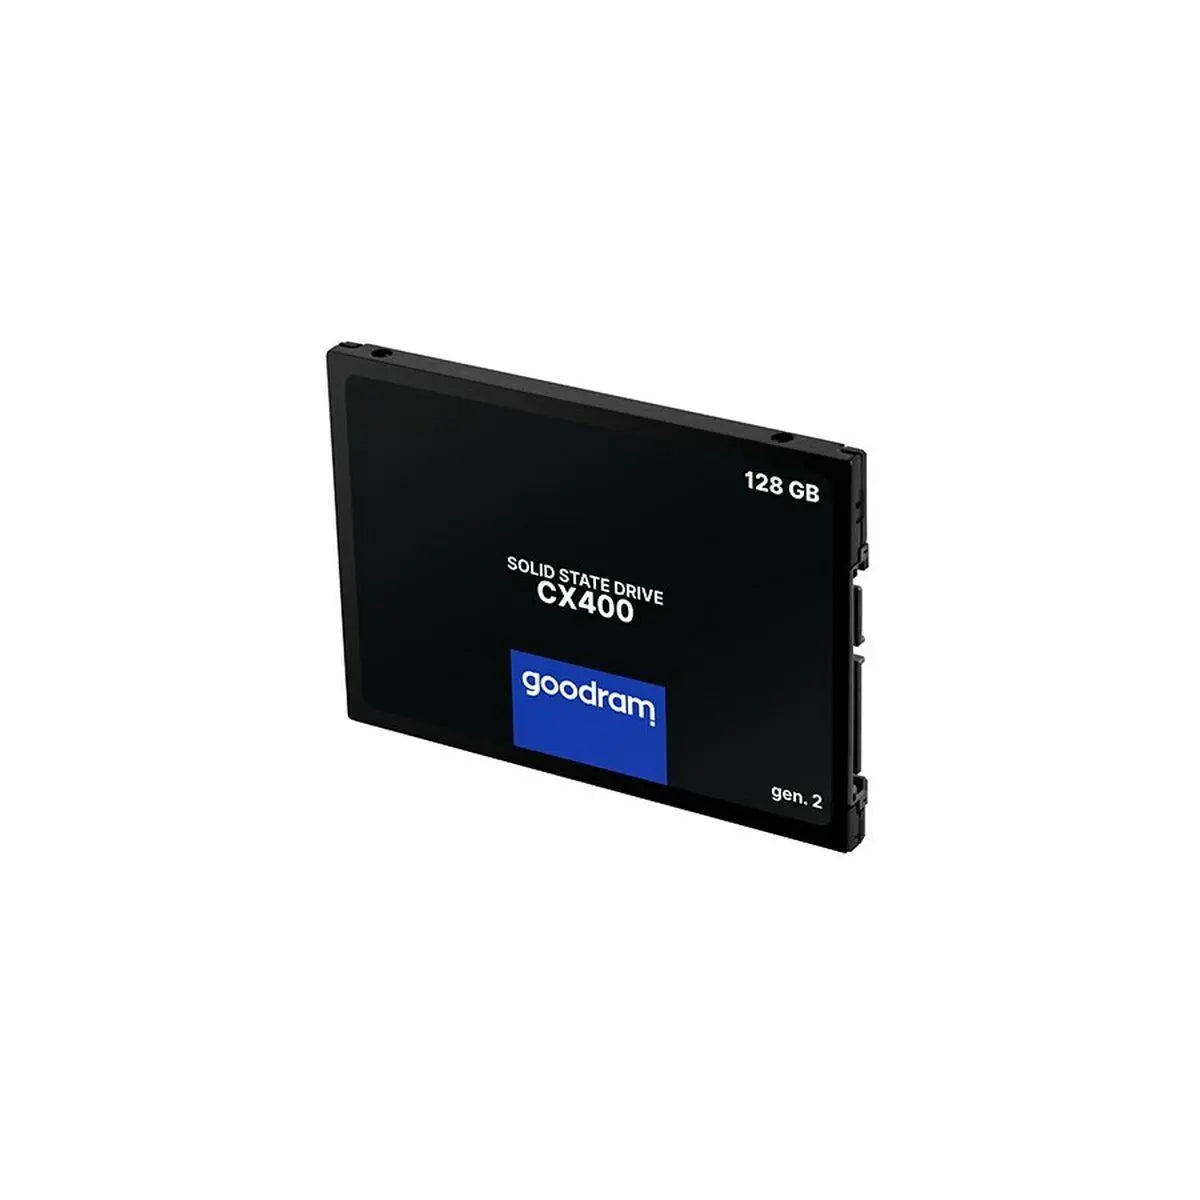 Hard Drive GoodRam CX400 gen.2 128 GB SSD - IGSI Europe Ltd